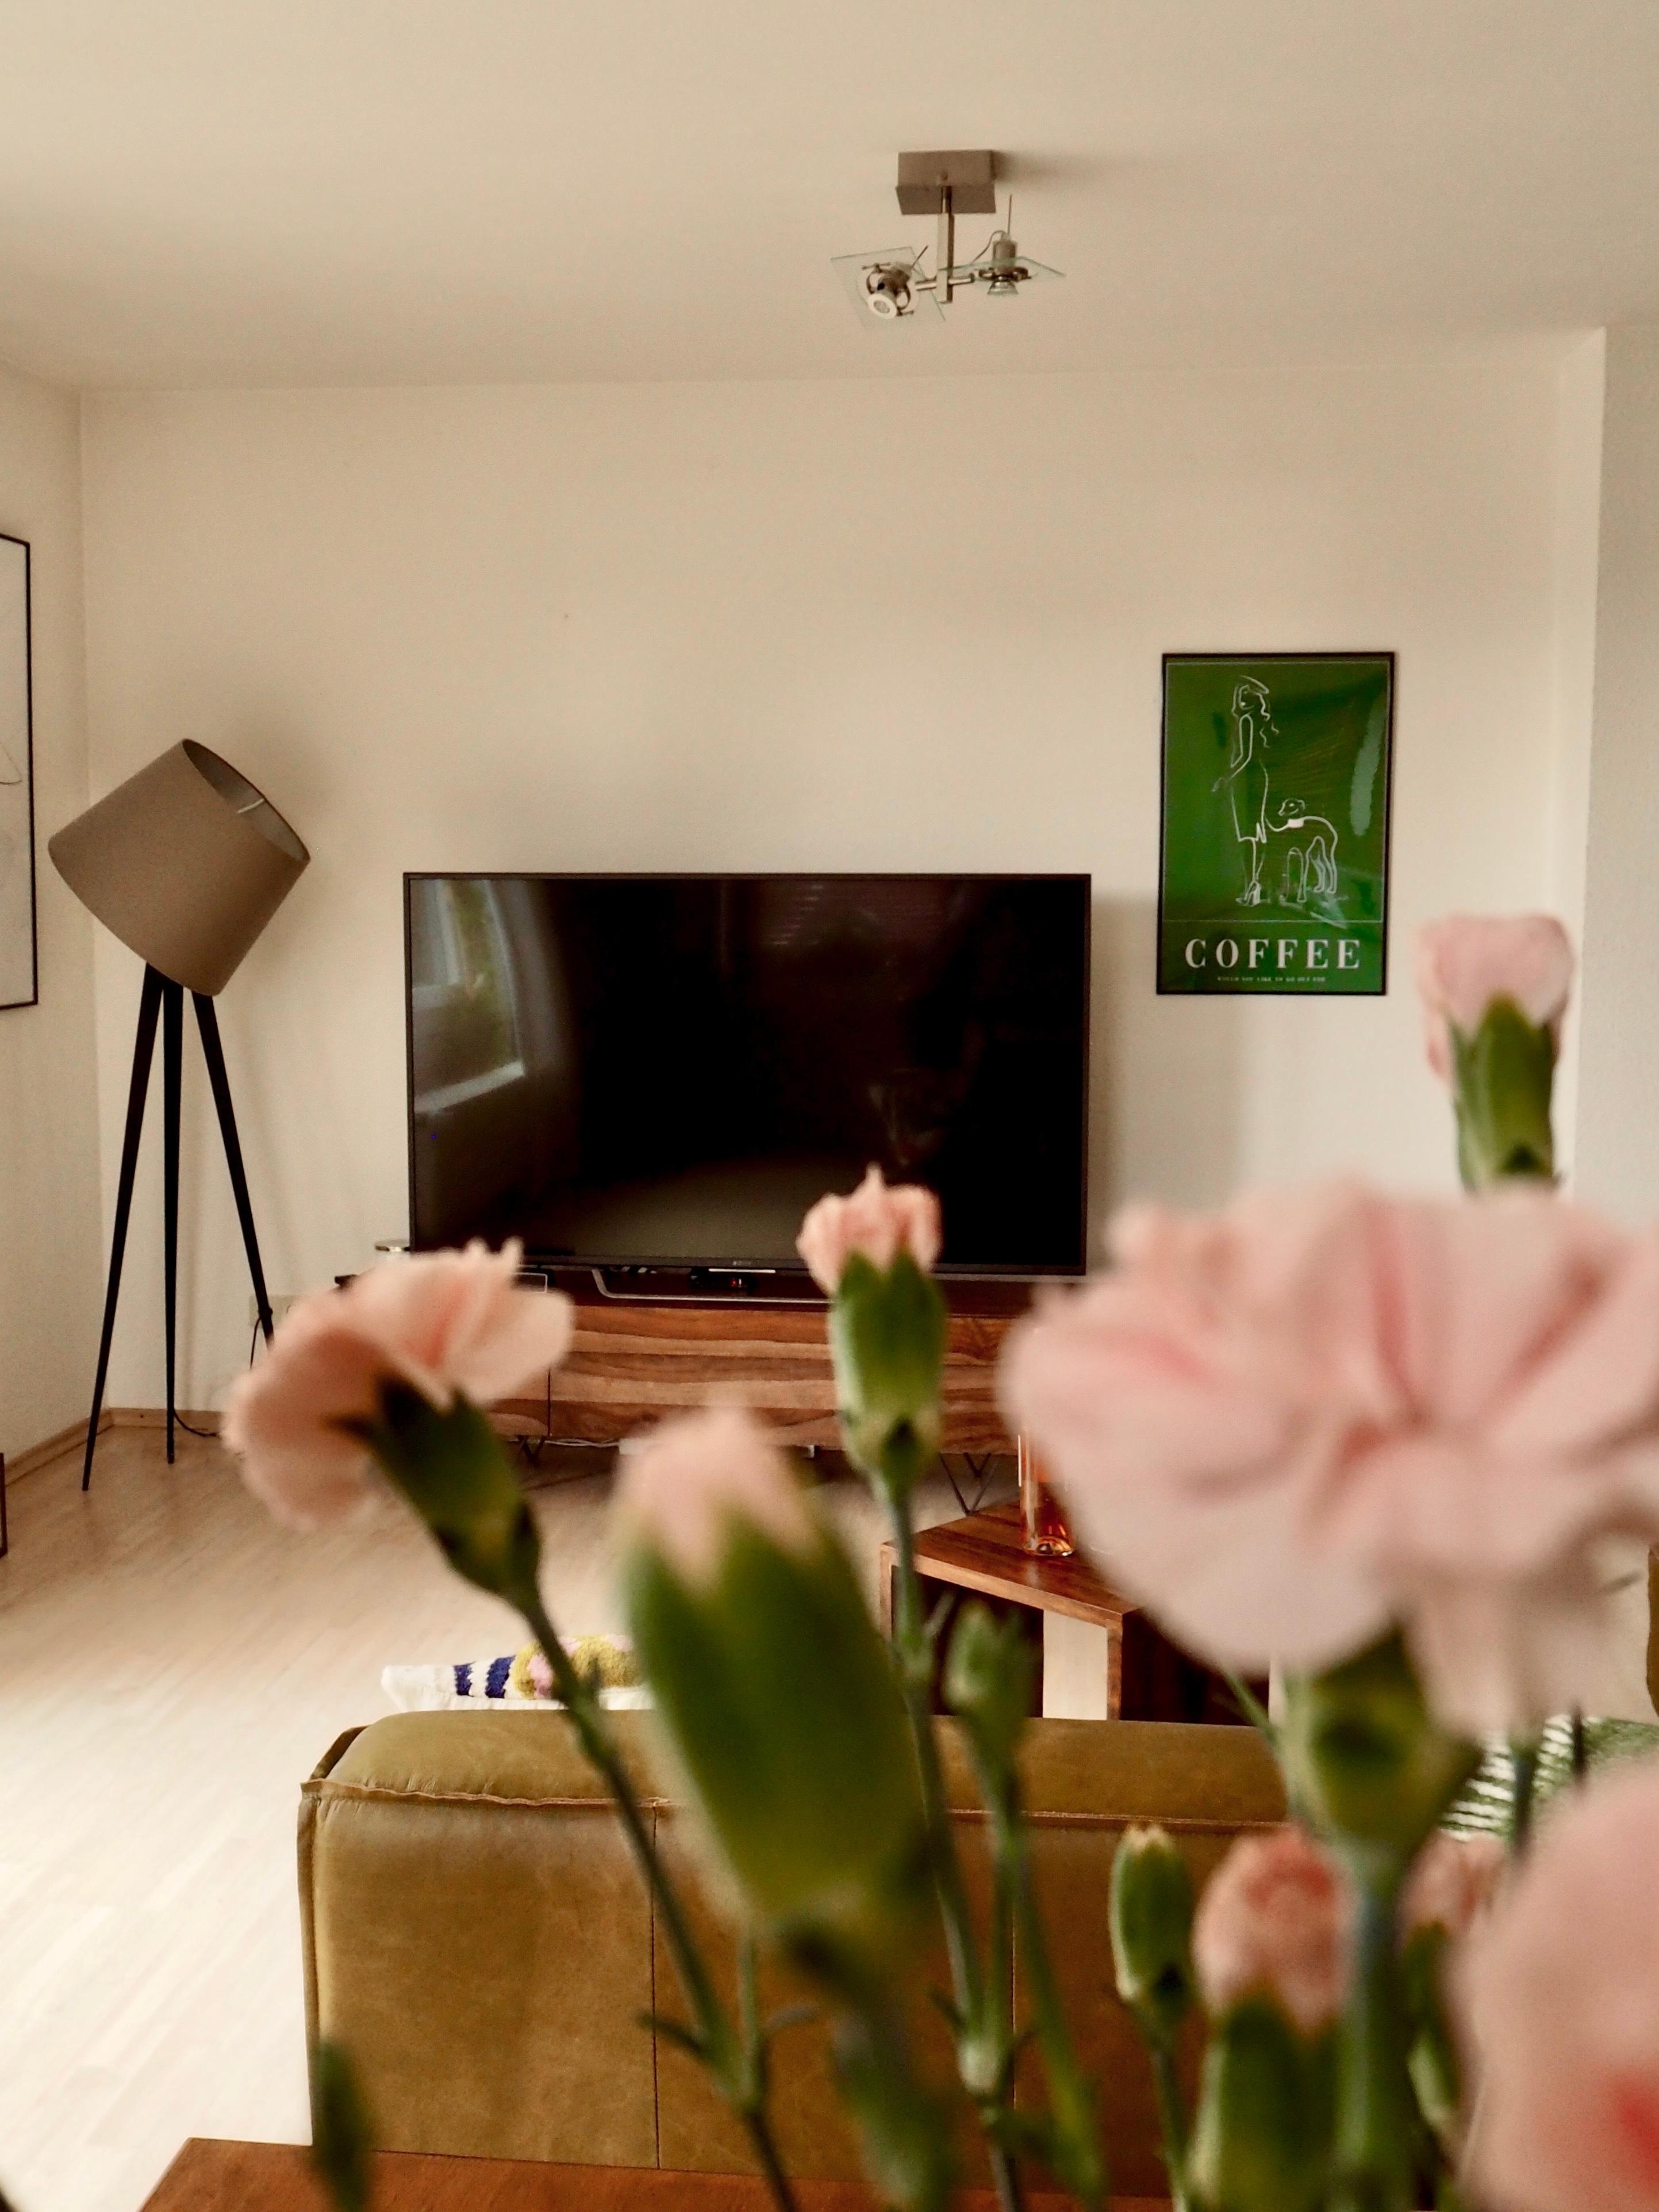 Frühling zu Hause 🌸
#livingchallenge #wohnzimmer #interior